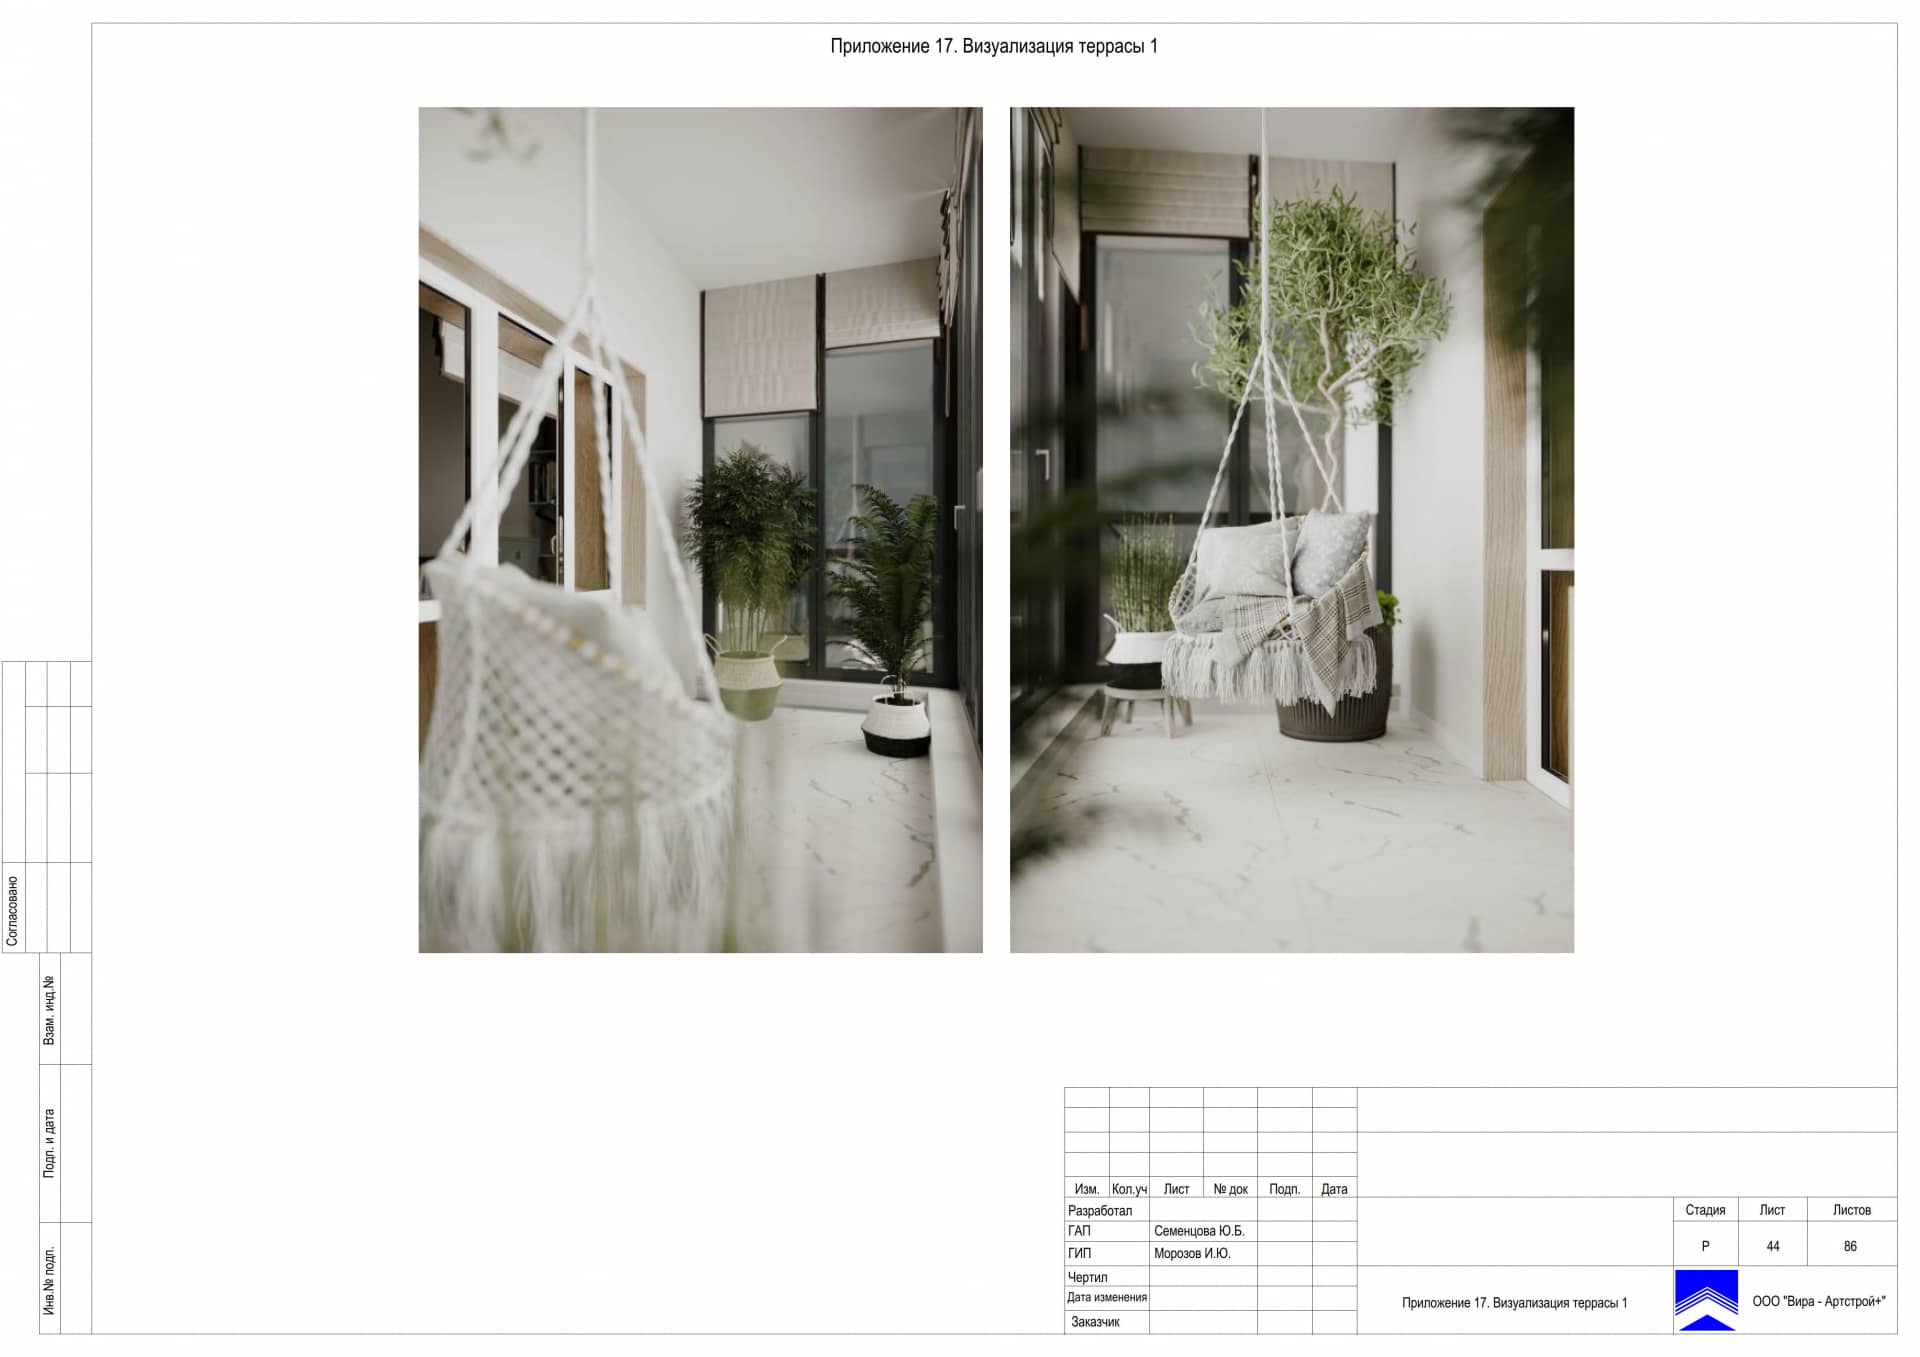 Приложение 17. Визуализация террасы 1, дом 471 м² в КП «Сорочаны»